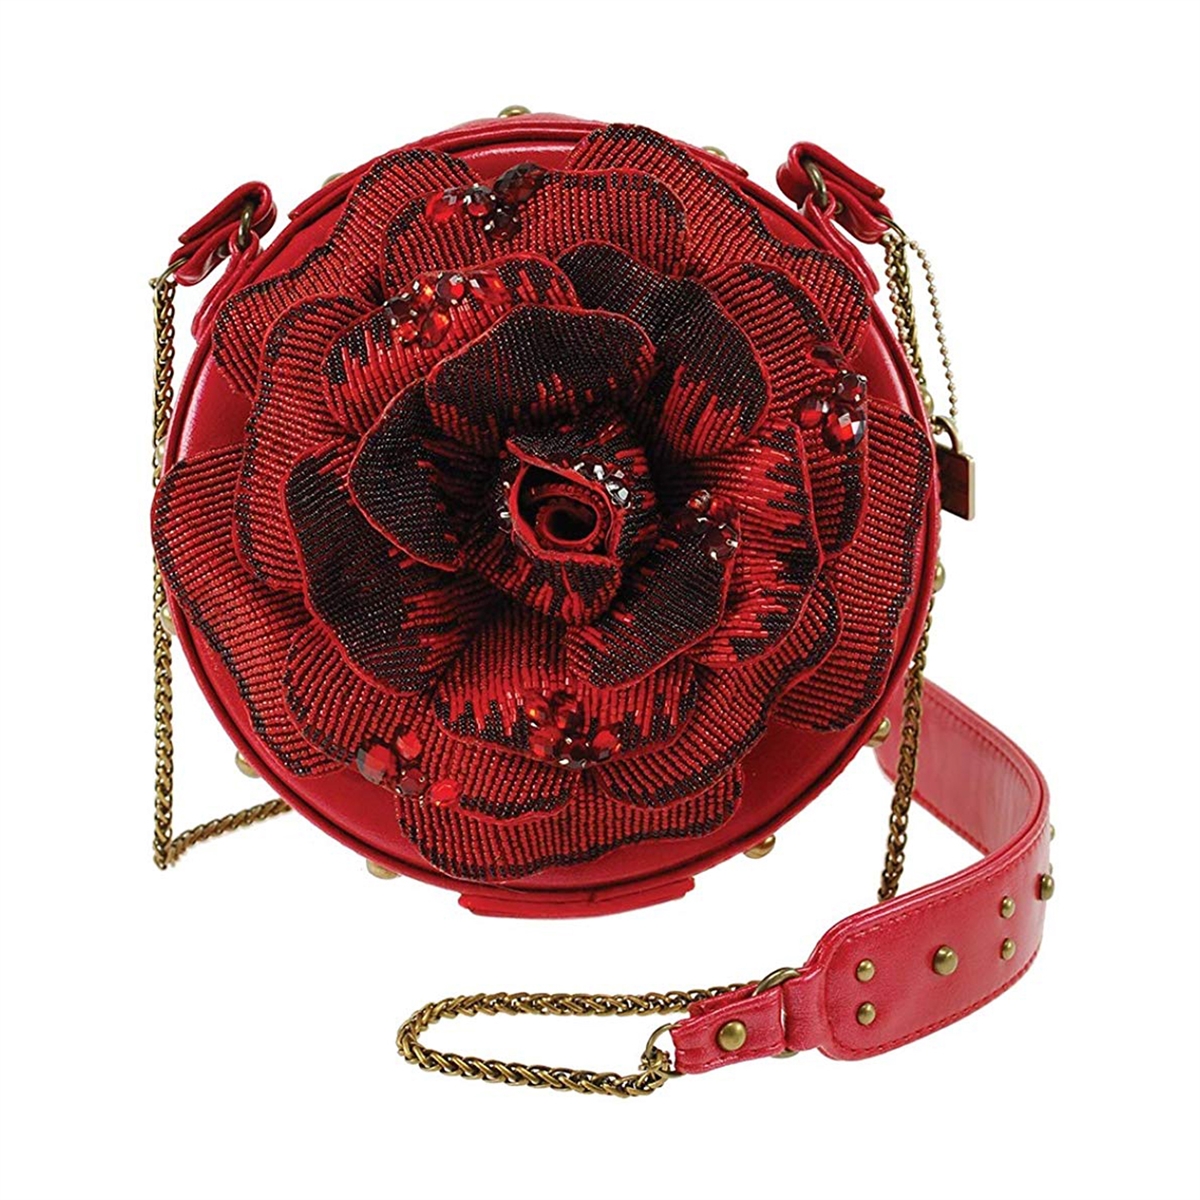 Embroidered rose purse vintage - Gem